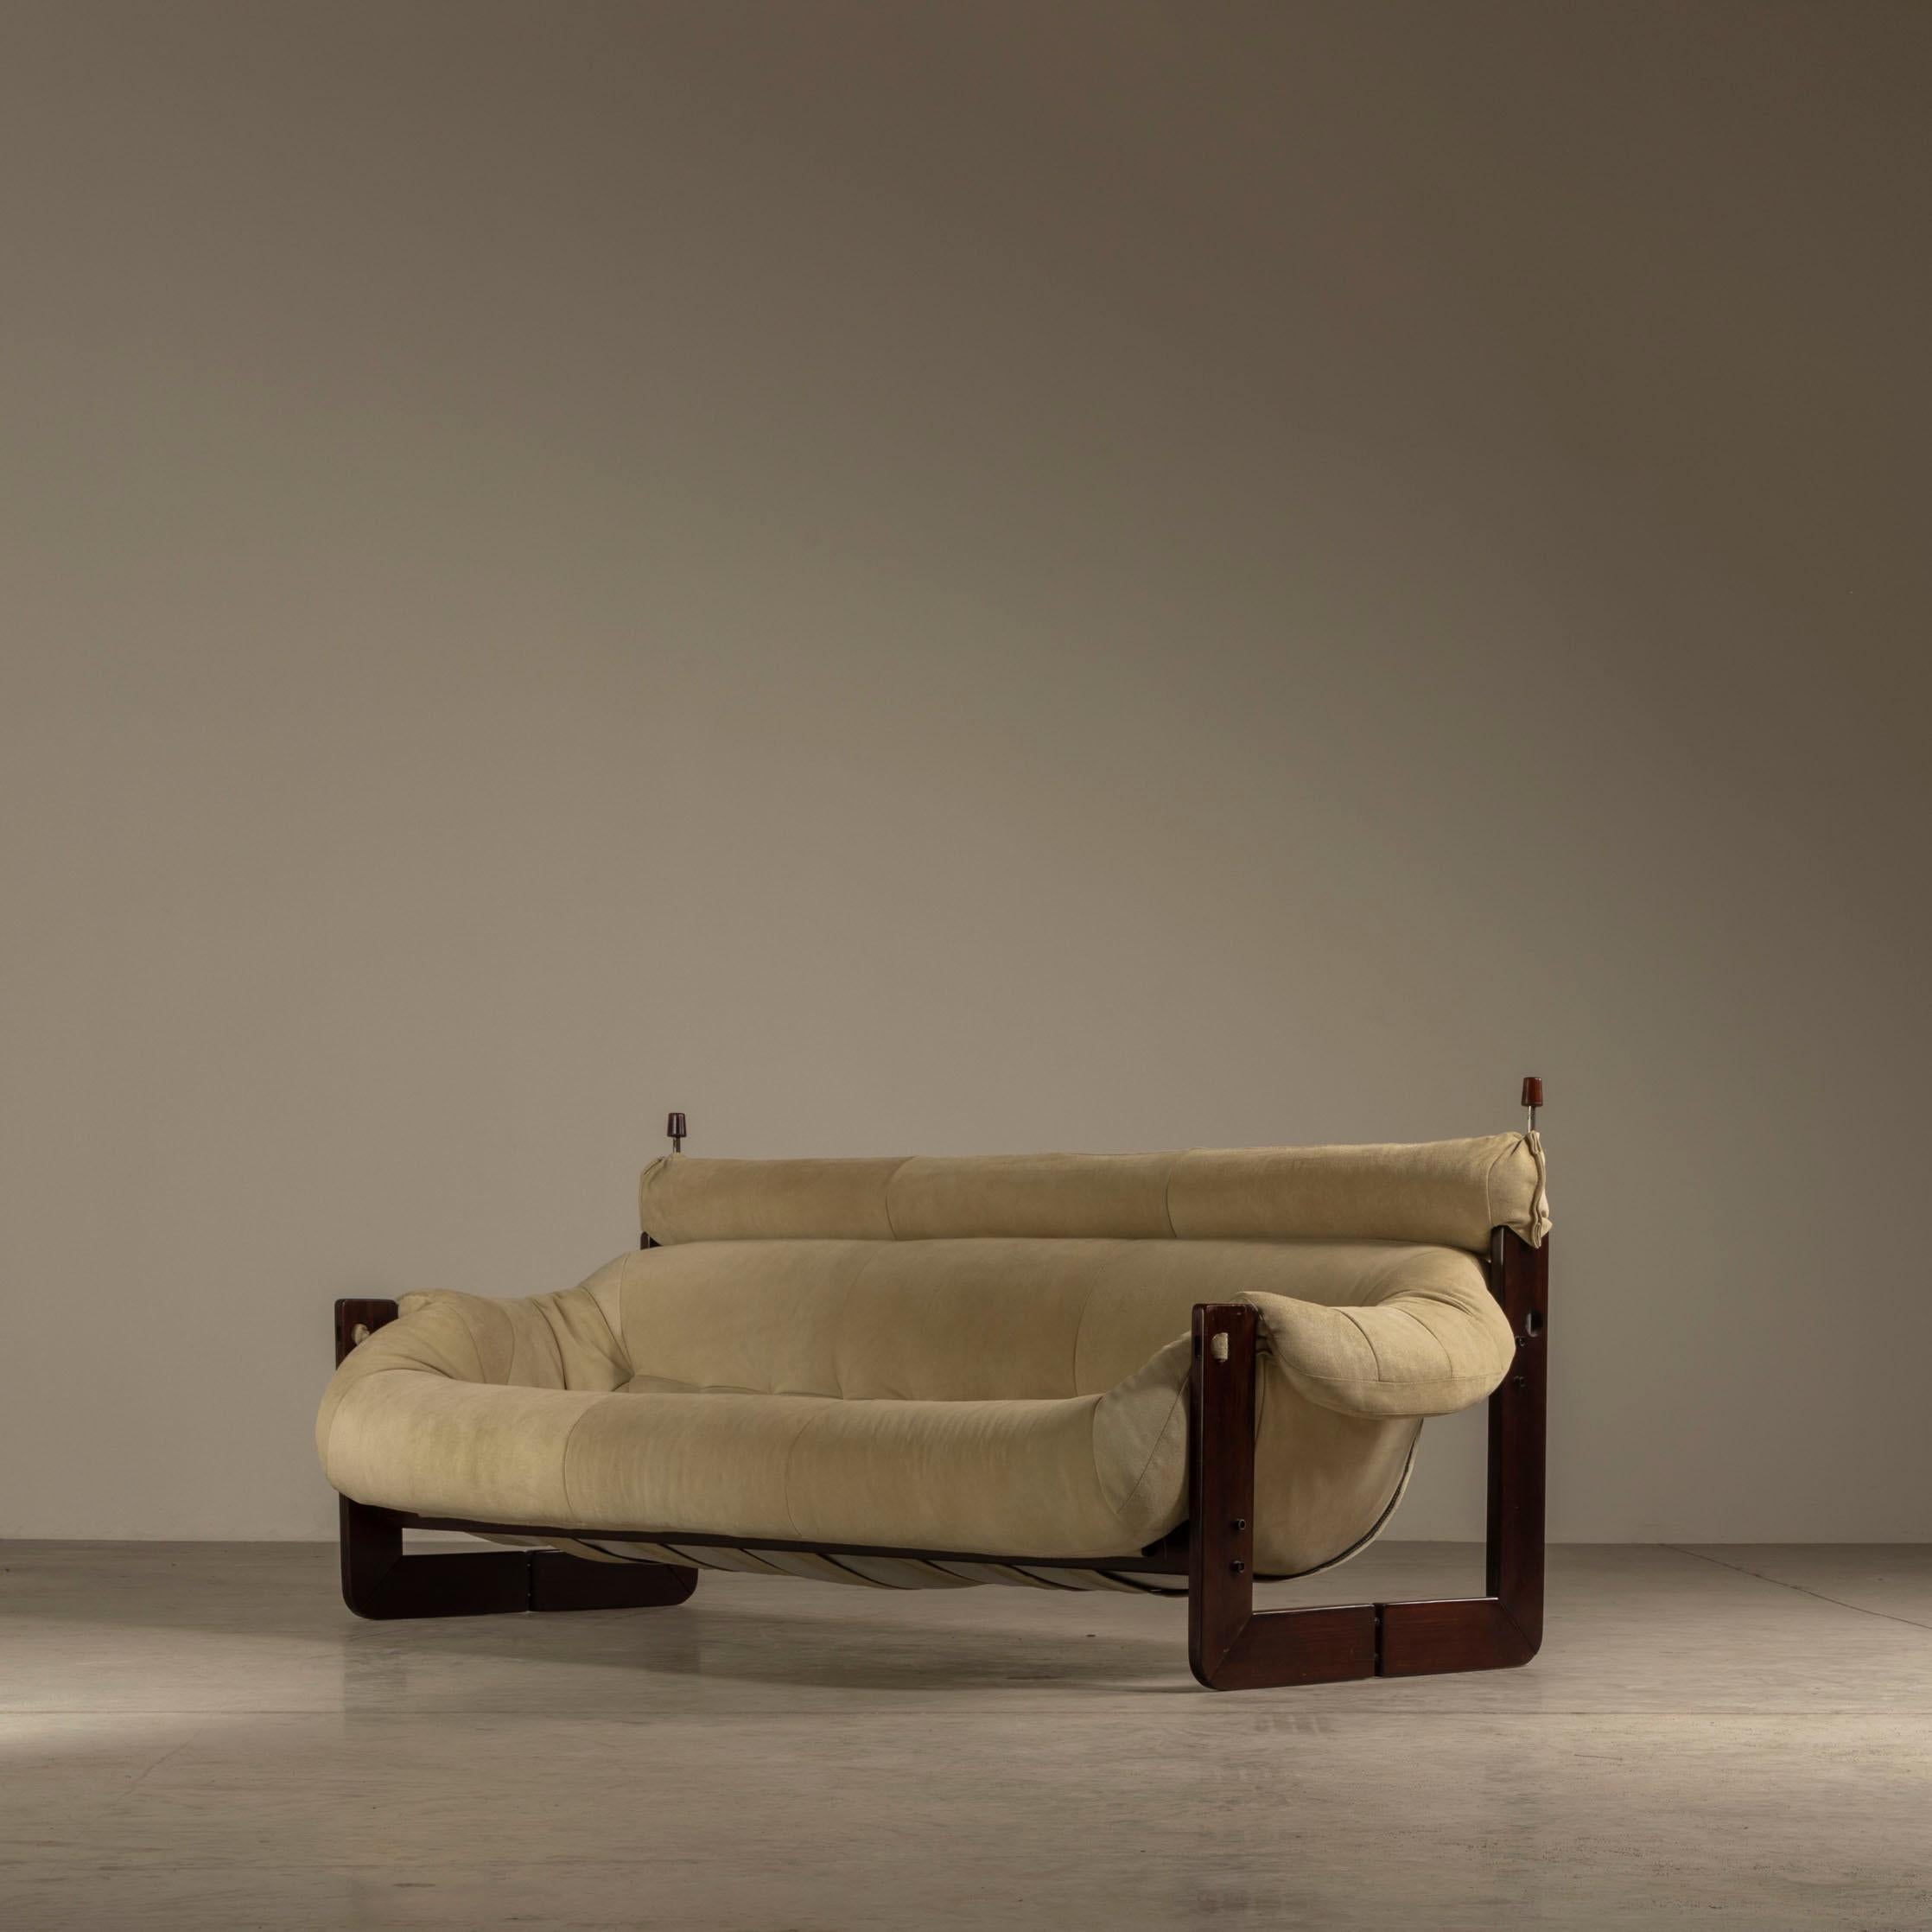 Sofa "MP-97", Design by Percival Lafer, Brazilian Mid-Century Modern